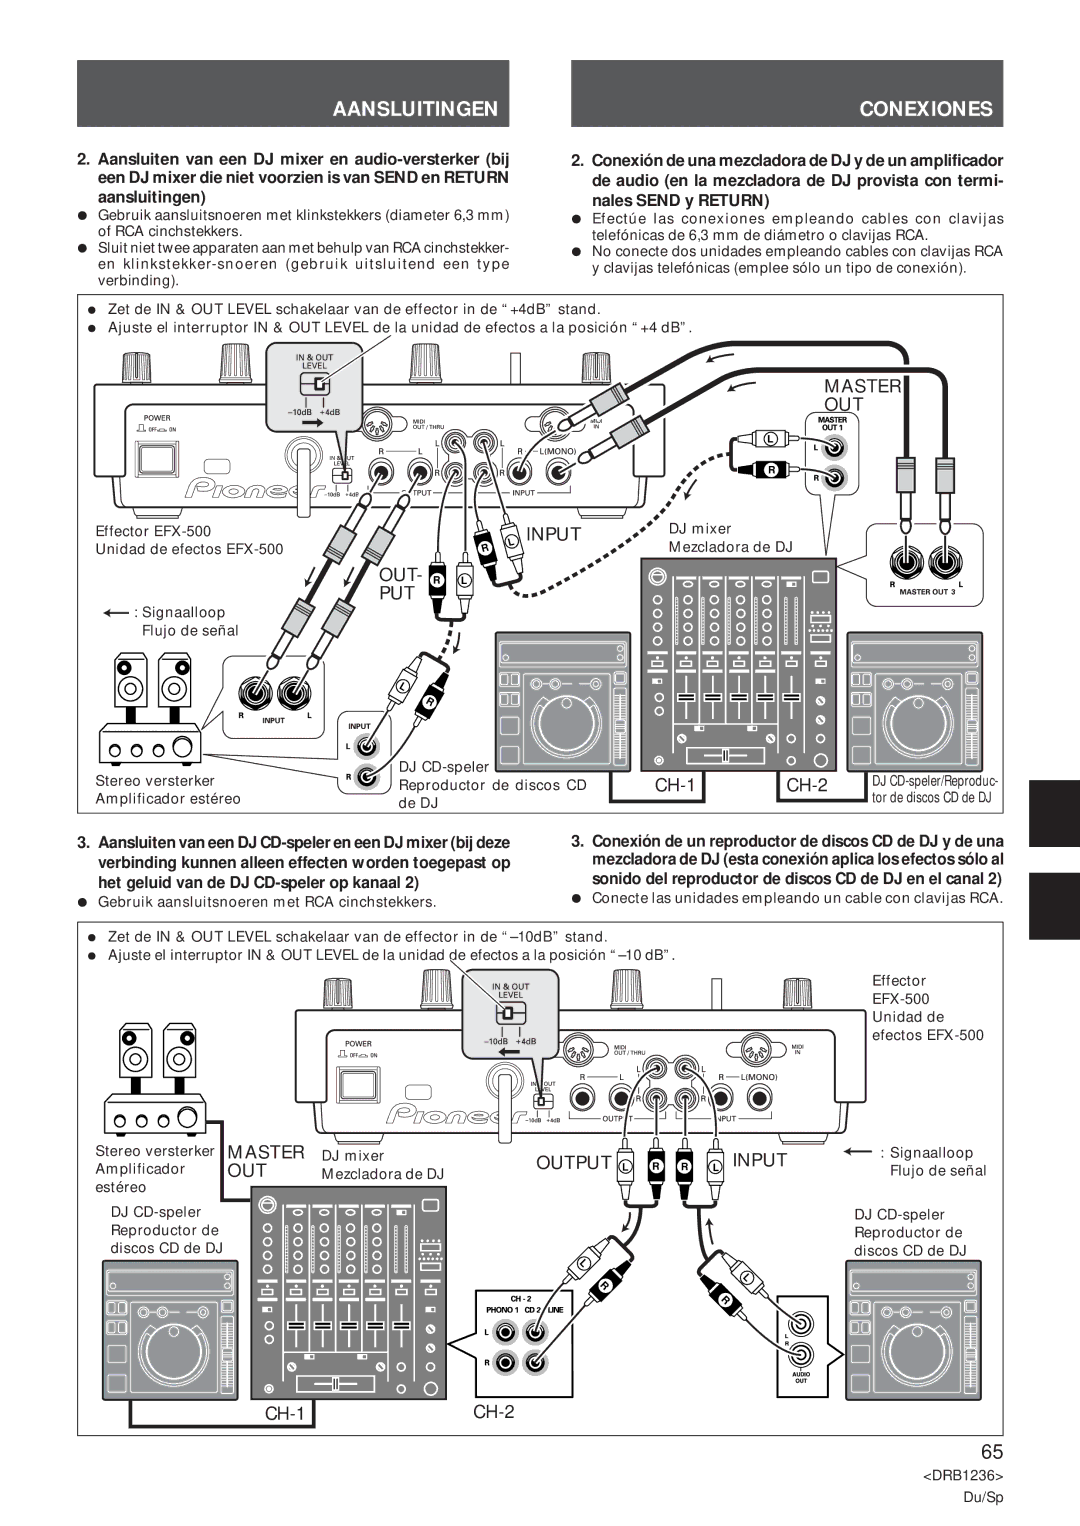 Pioneer Efx-500 Aansluitingen Conexiones, Nales Send y Return, Het geluid van de DJ CD-speler op kanaal 